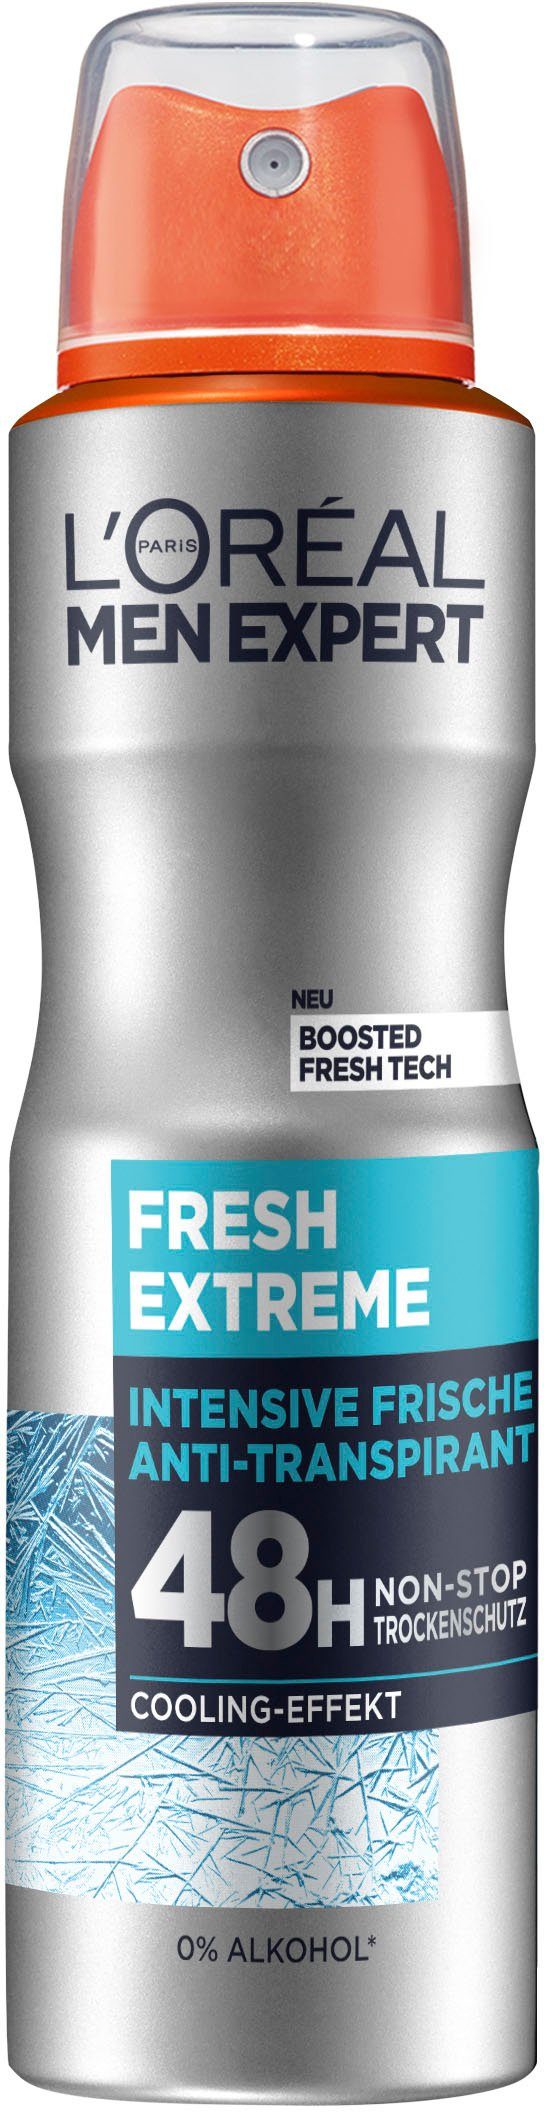 L'ORÉAL PARIS MEN EXPERT Fresh Deo-Spray Extreme, Trockenschutz Non-Stop 48H